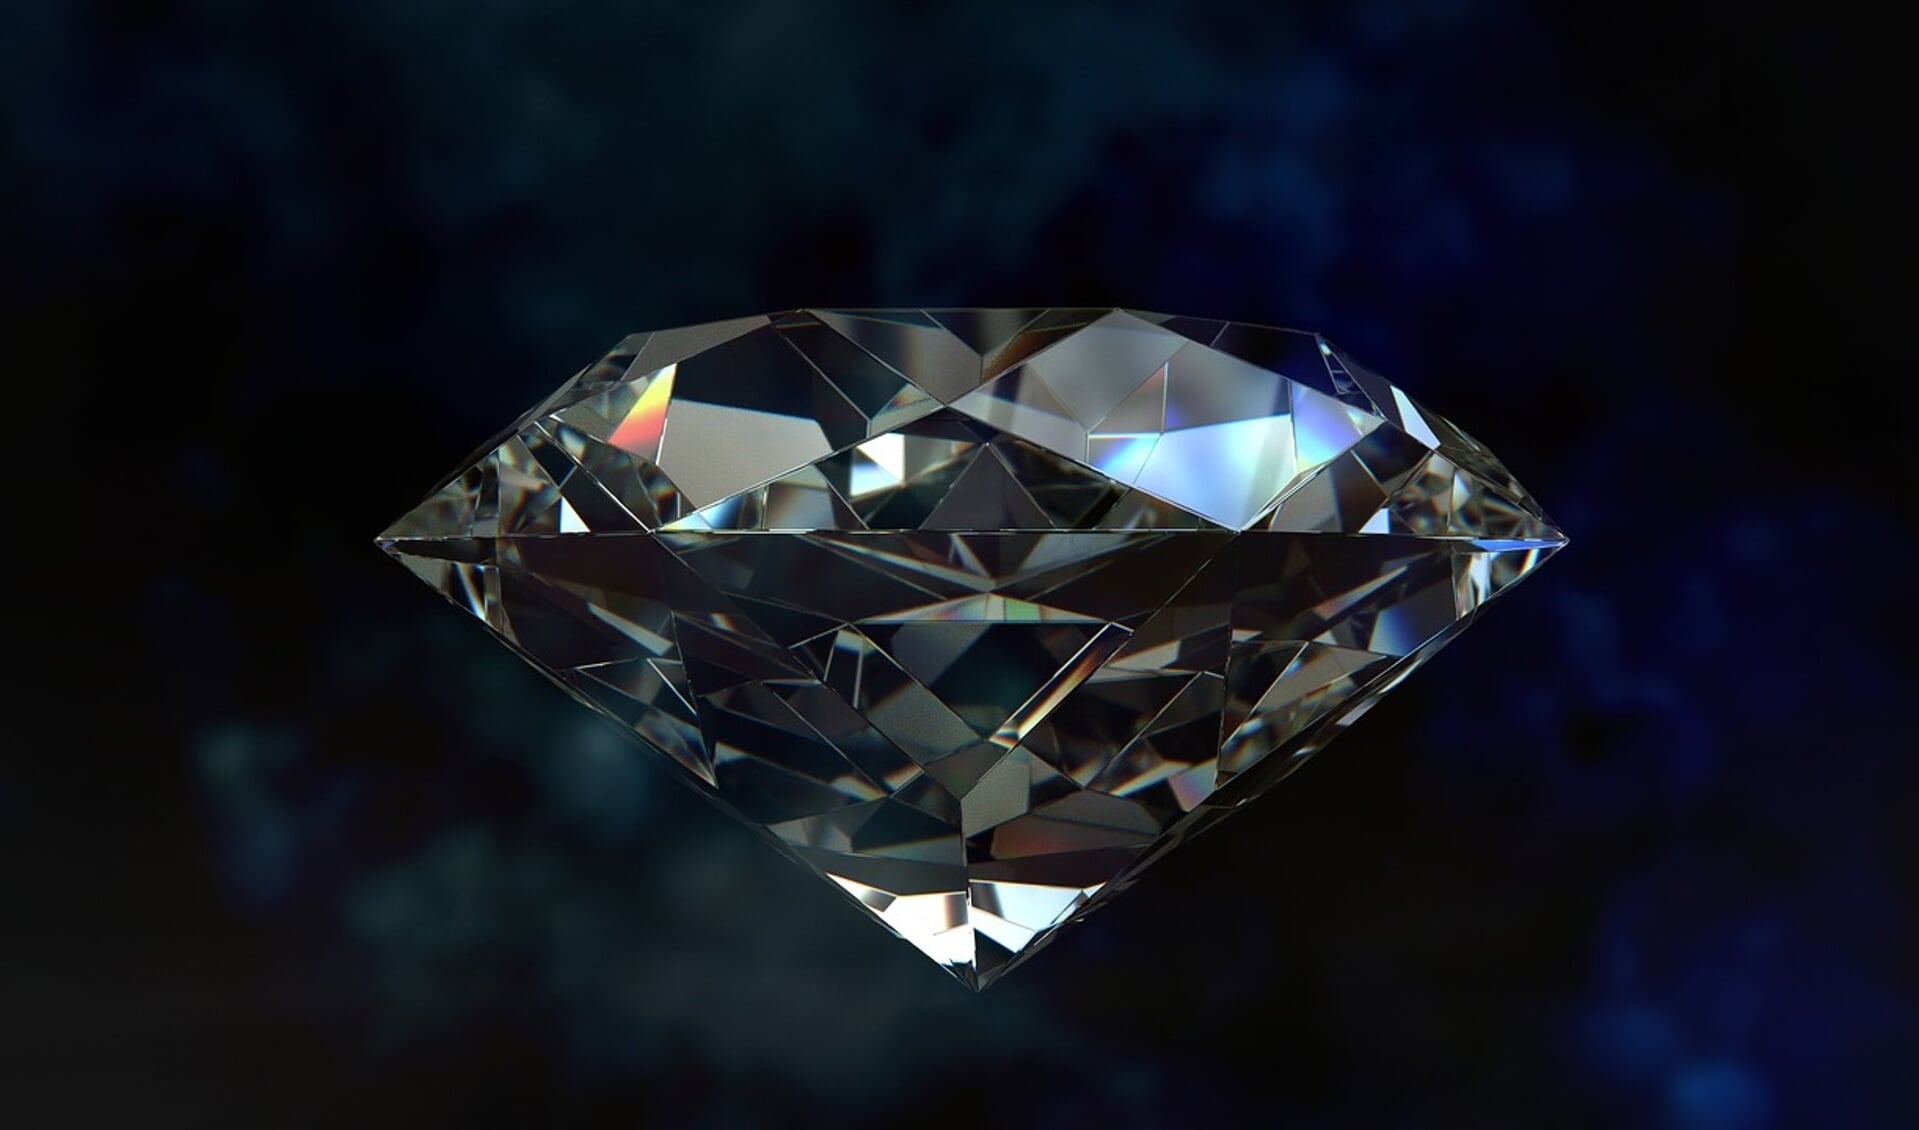 verrader Publiciteit Ontwaken Diamant verkopen? Hier moet je op letten | Het laatste nieuws uit Groenlo